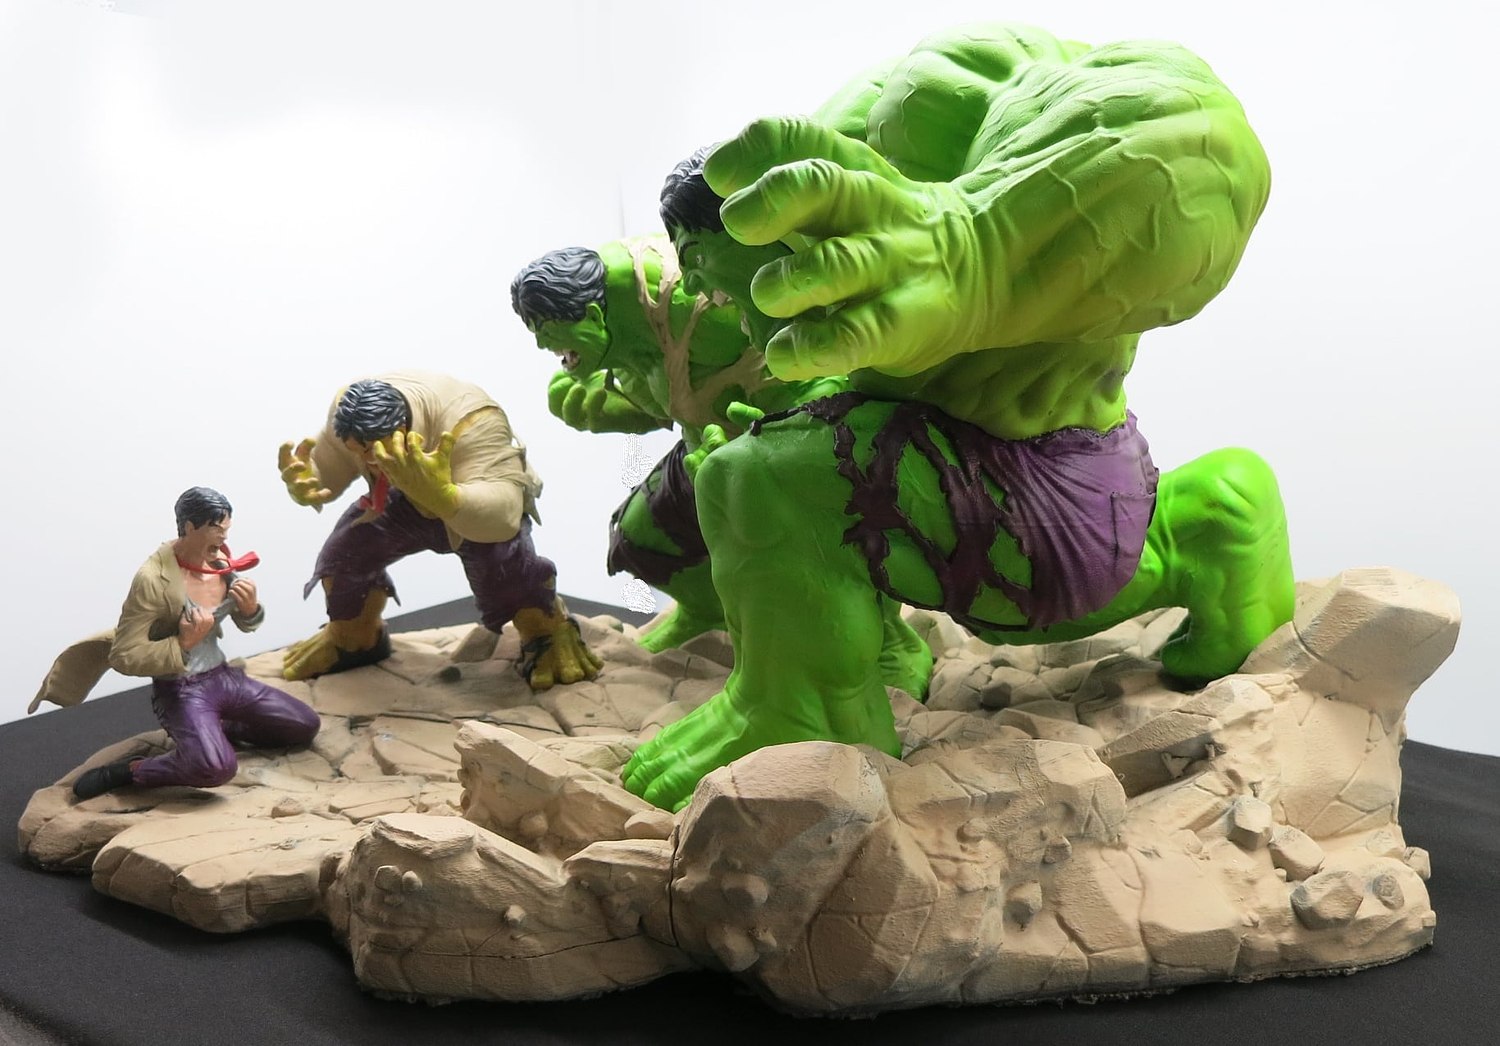 Hulk Transformation from Marvel | SpecialSTL